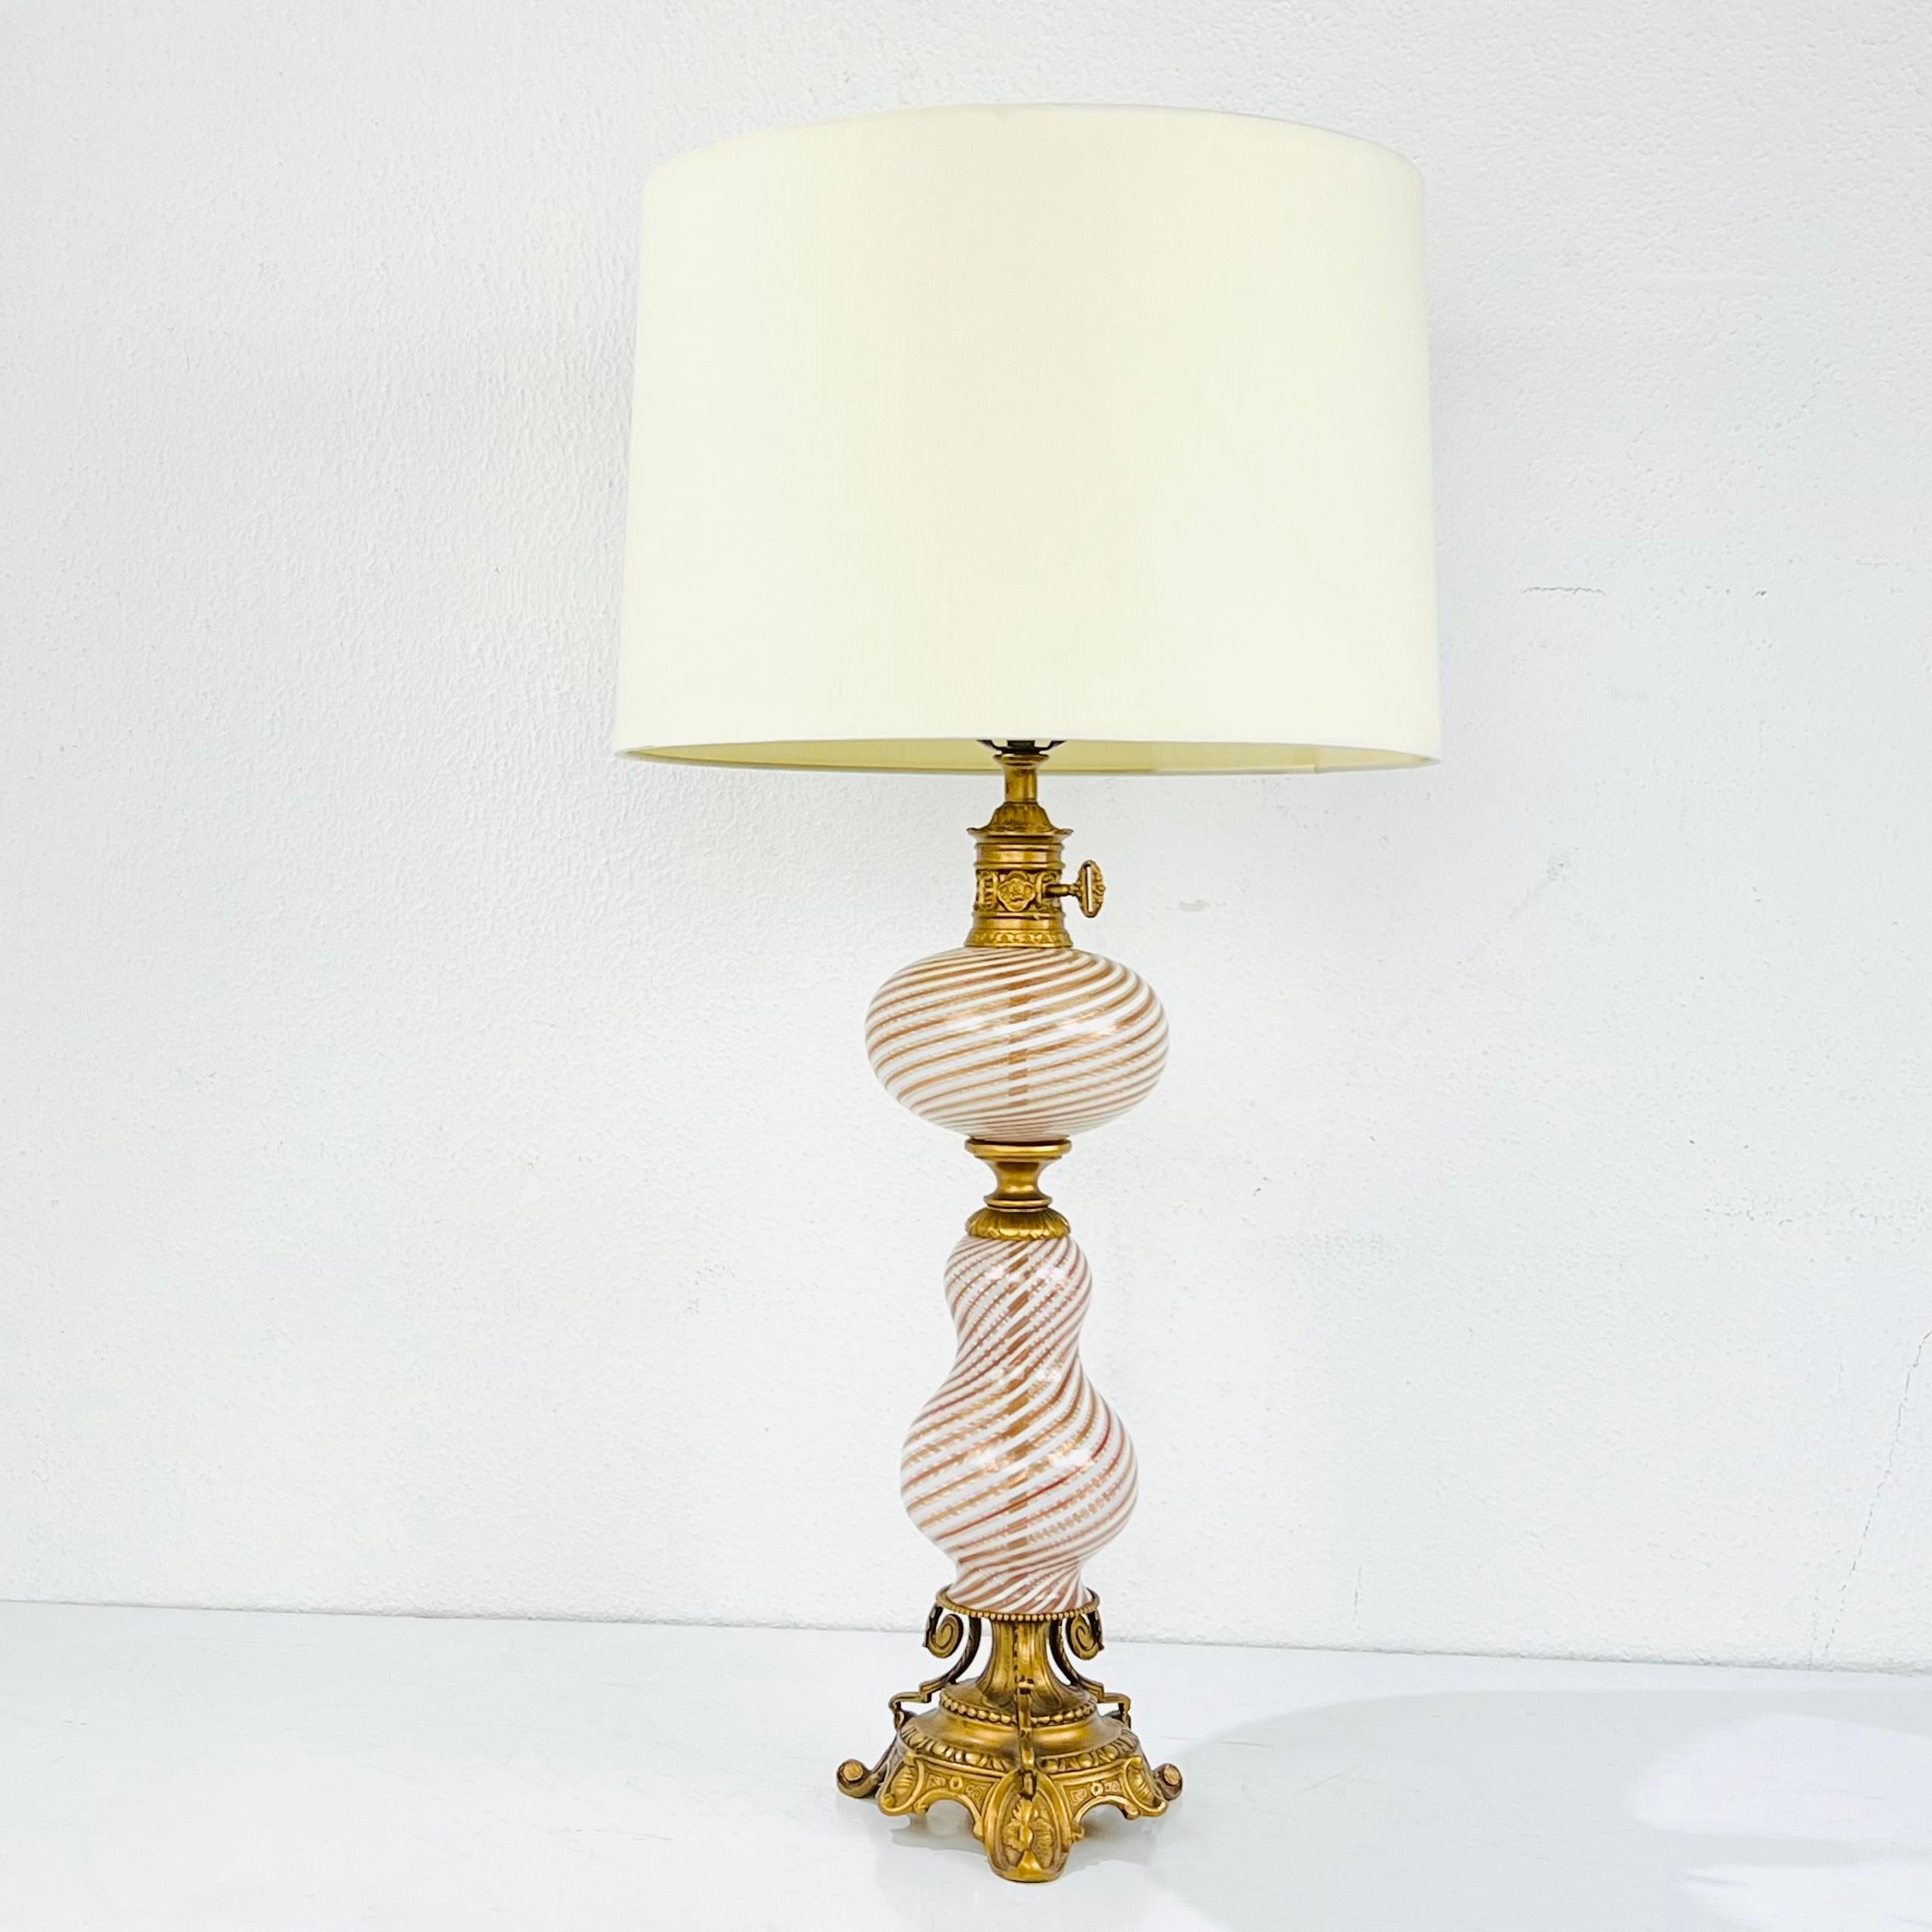 Chic lampe de table antique en verre de Murano soufflé à la main par Dino Martens. En bon état, original, propre et fonctionnel. Fabriqué en Italie, l'autocollant d'origine est toujours présent. Câblé pour les États-Unis. L'abat-jour n'est pas